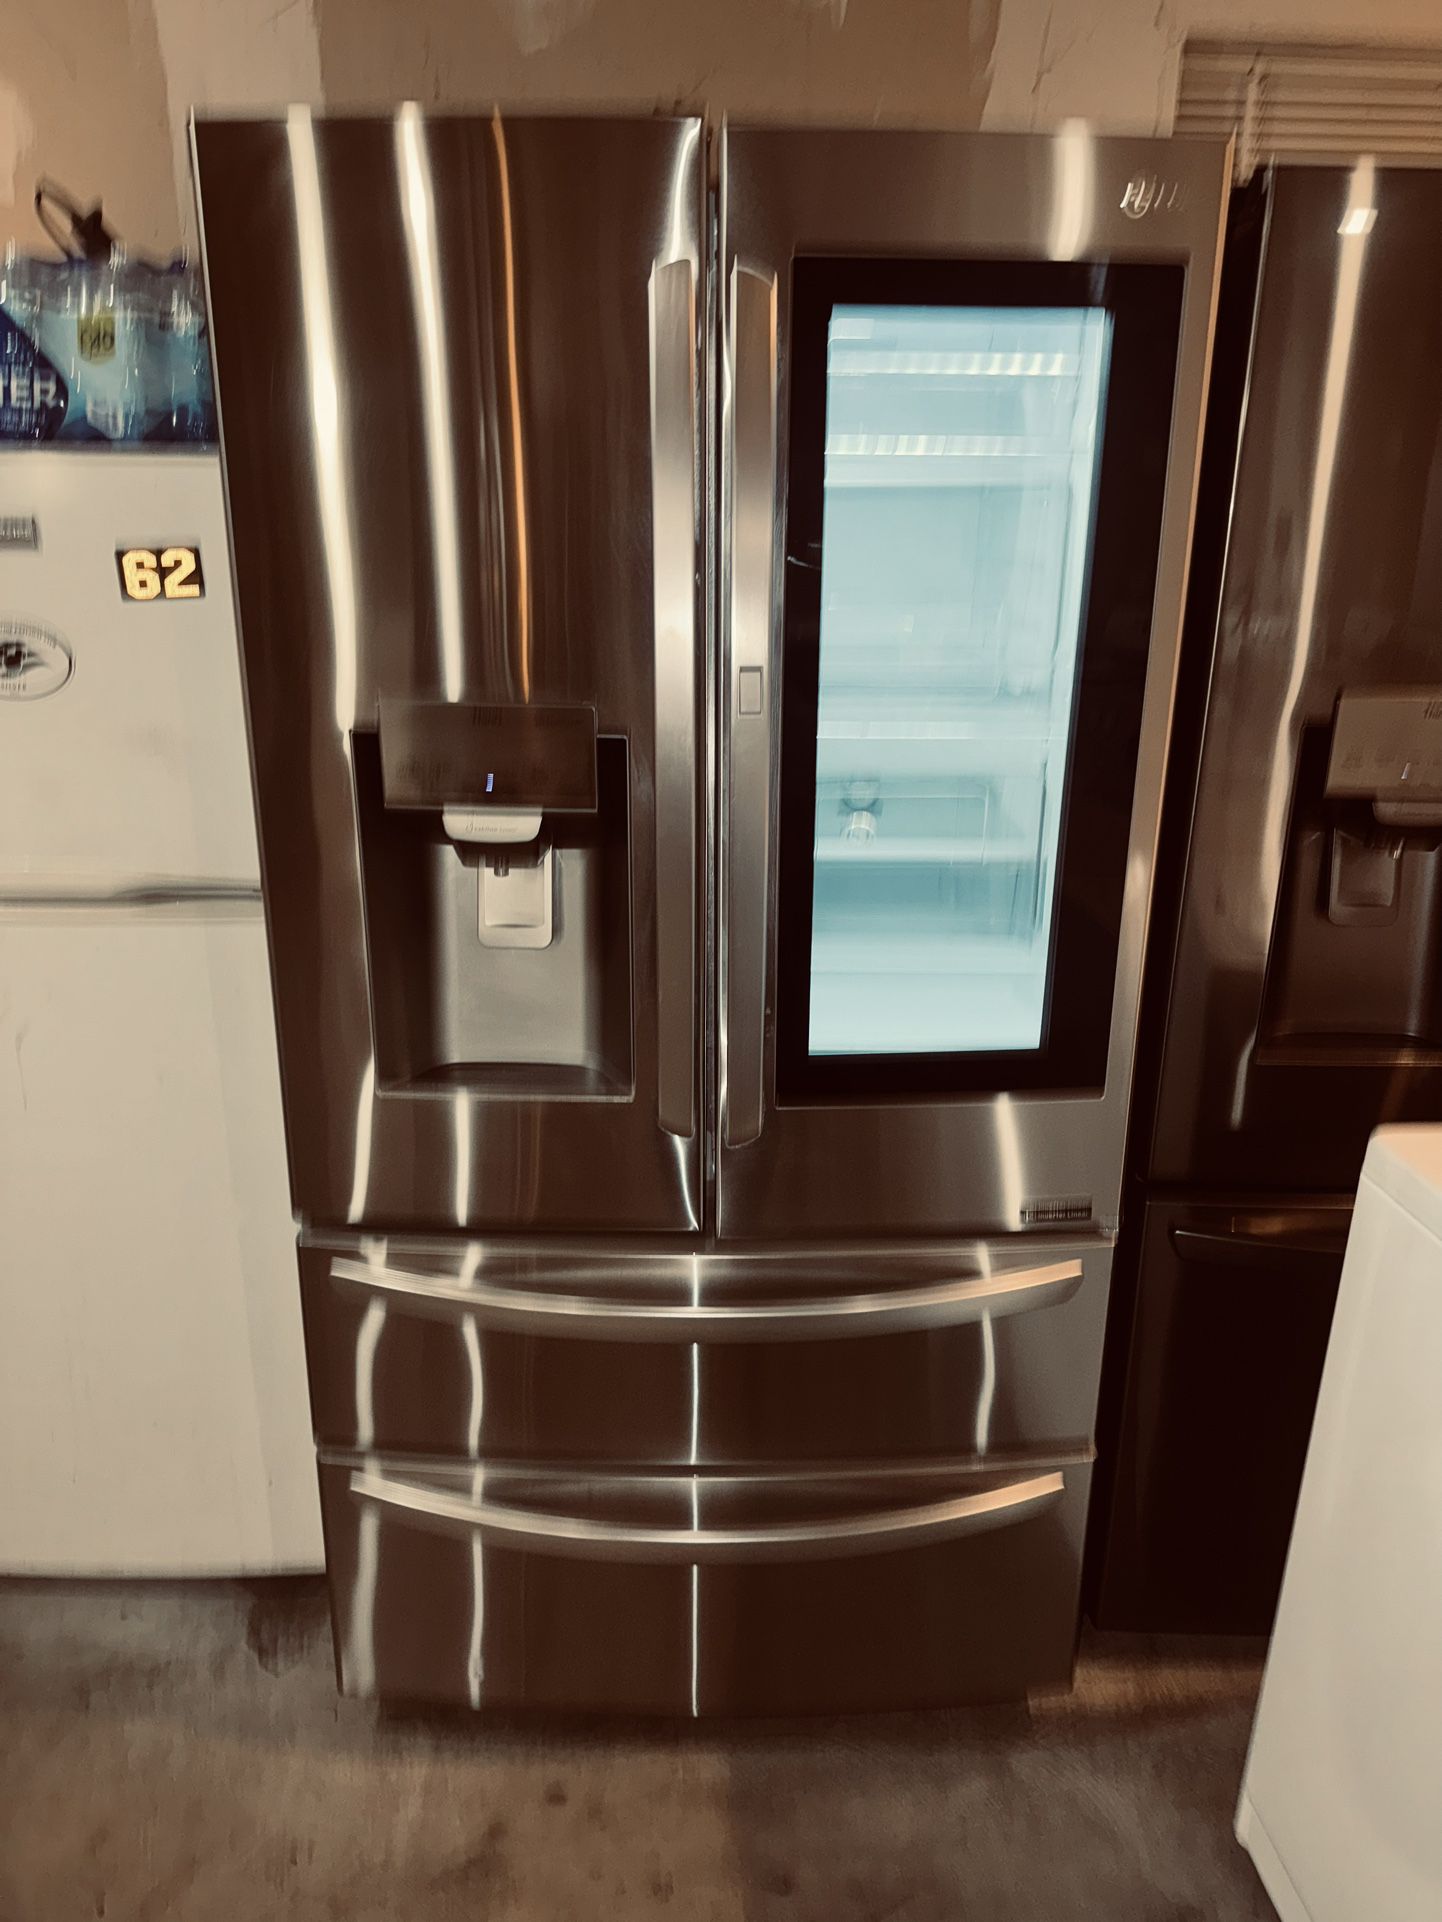 Refrigerador LG Everything Works 3 Month Warranty We Deliver 